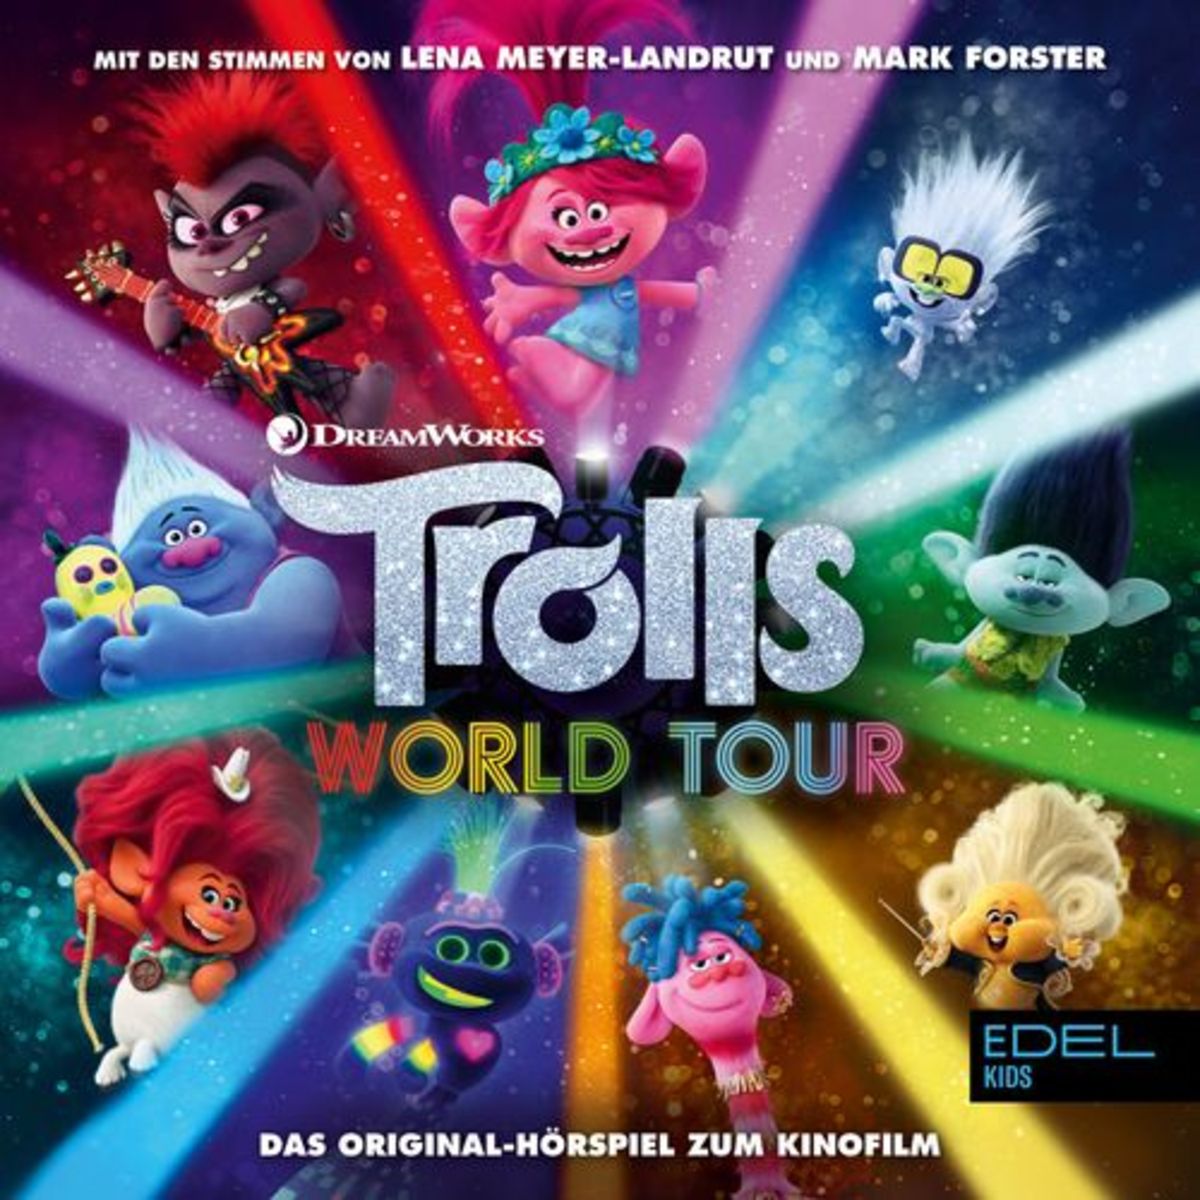 Trolls World Ramcke\' Hörbuch-Download Tour \'Inga - Kinofilm)\' von Original-Hörspiel (Das zum